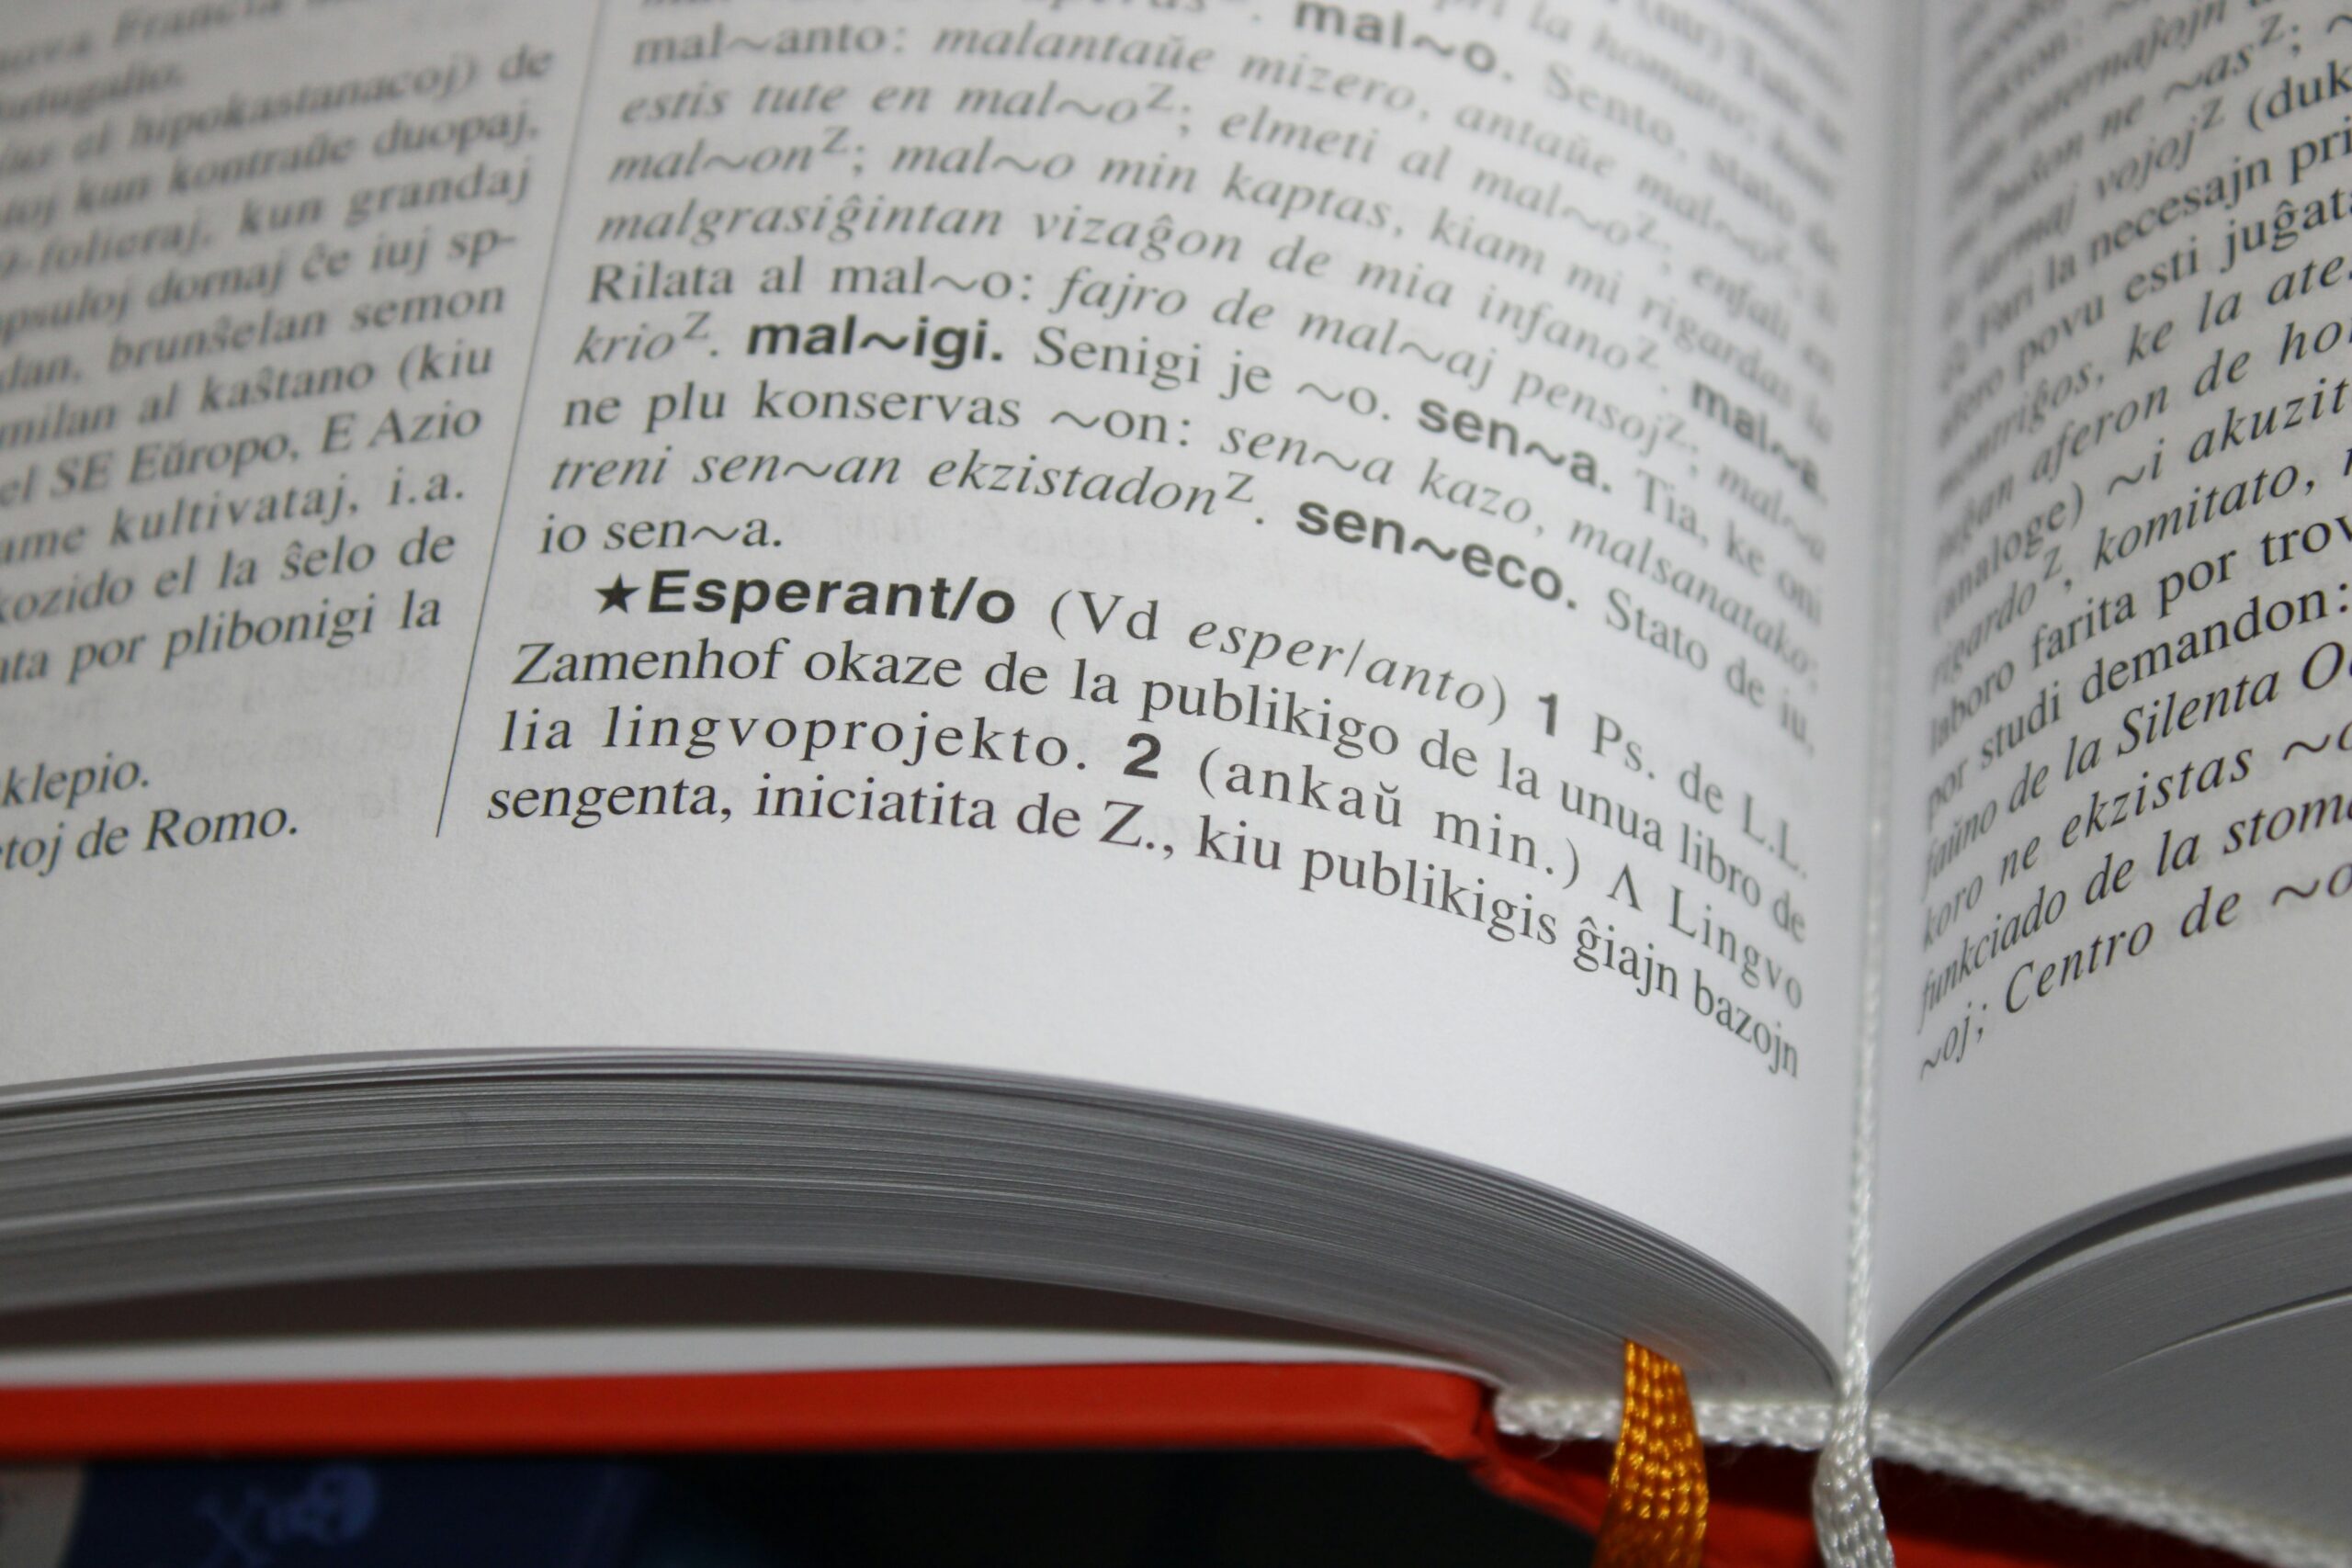 Esperanto defined in an Esperanto dictionary